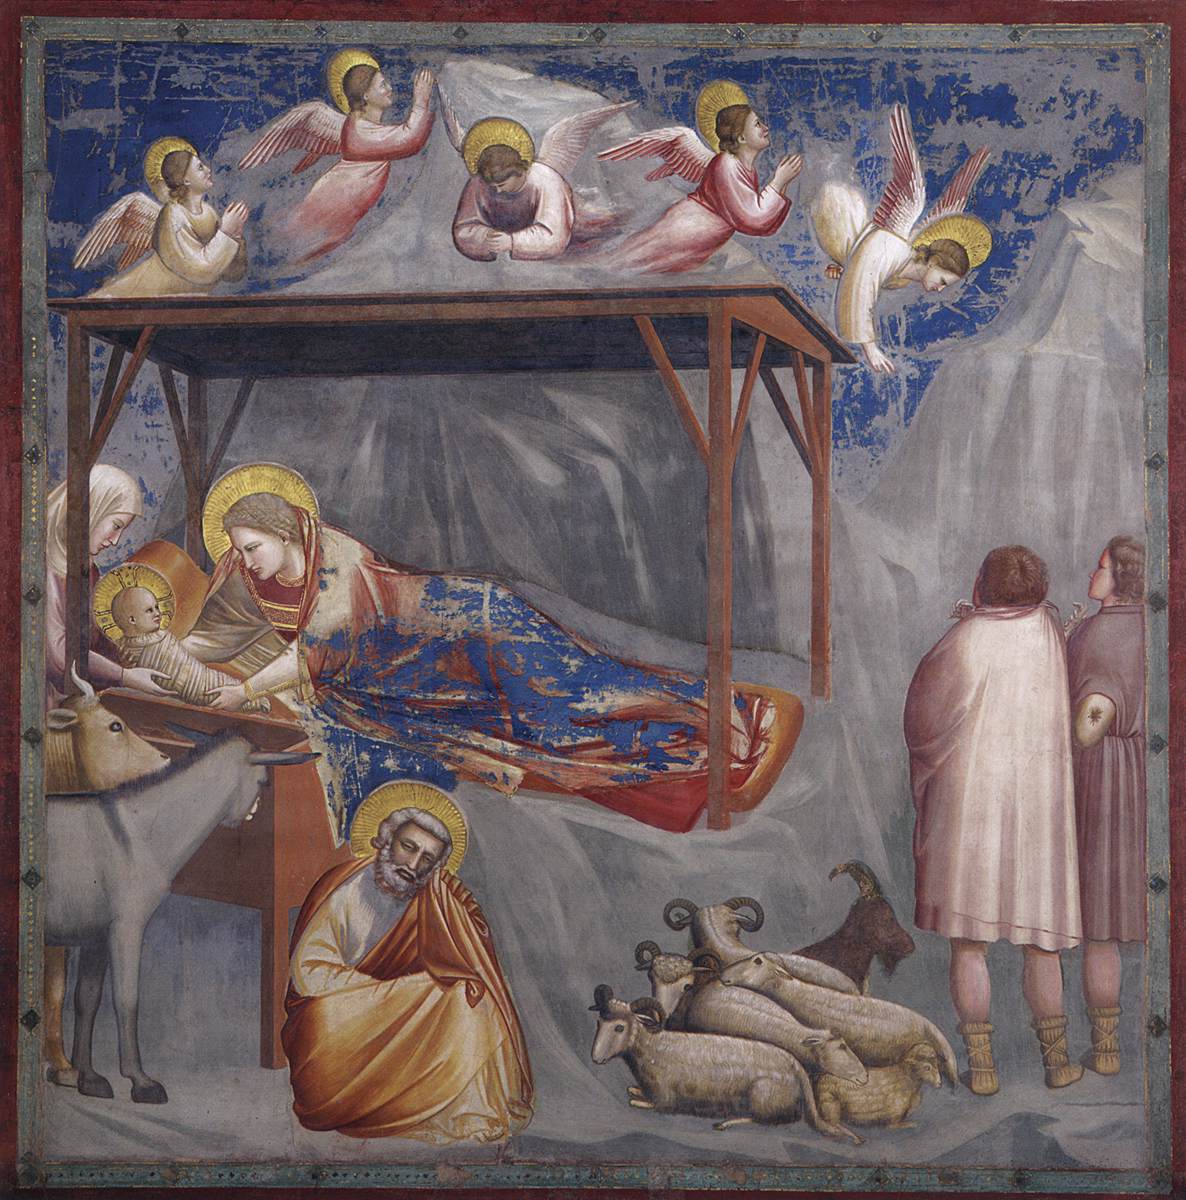 No 17 Escenas de La Vida de Cristo: 1 La Natividad: El Nacimiento de Cristo